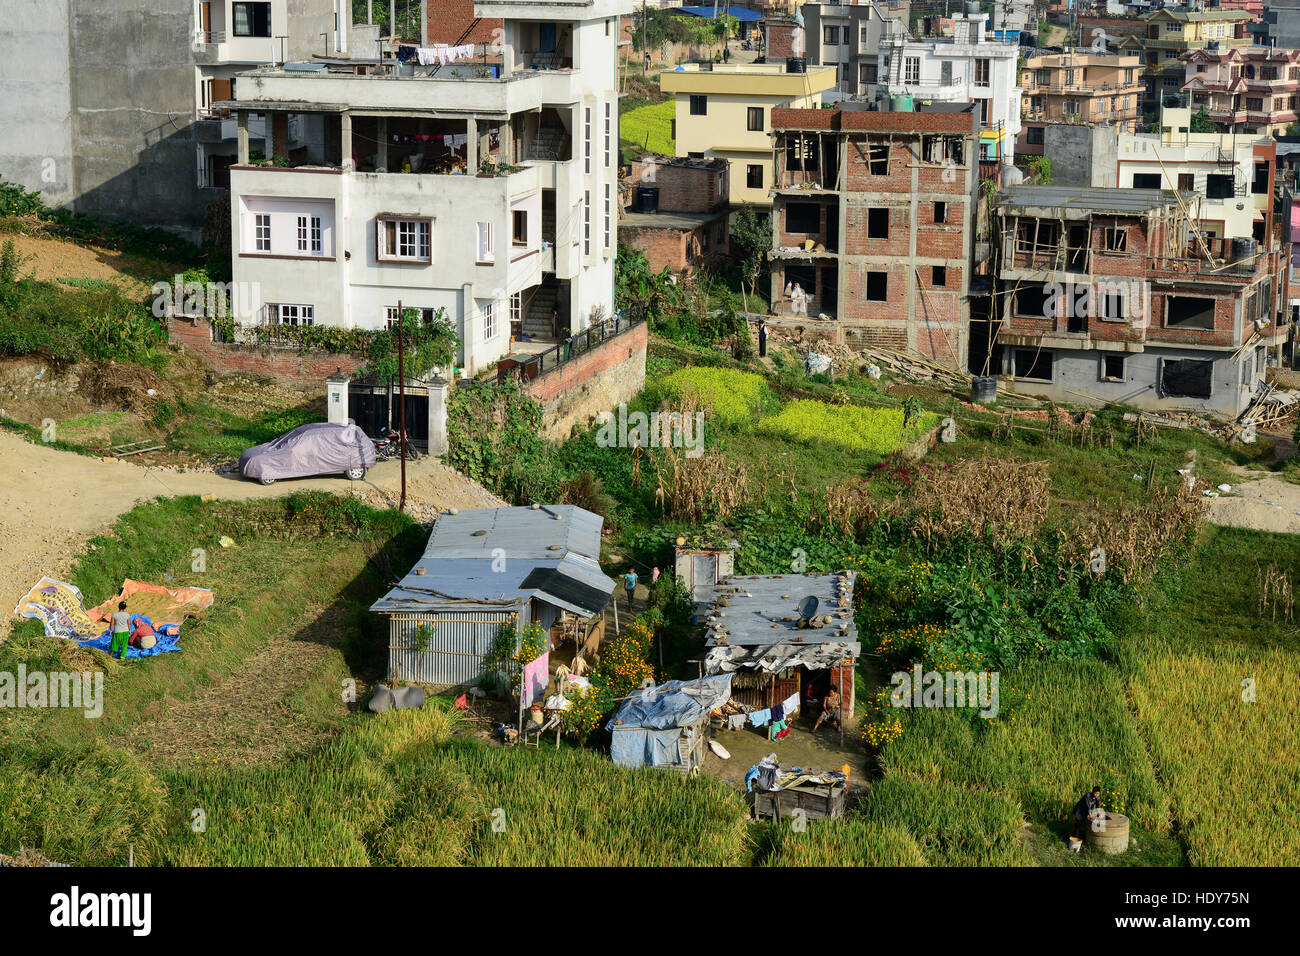 NEPAL Kathmandu, city growth, loss of agricultural fields, a remaining tin-shed hut and paddy fields / Staedtewachstum, Verlust von landwirtschaftlicher Flaeche, letzte Huette und Reisfelder Stock Photo